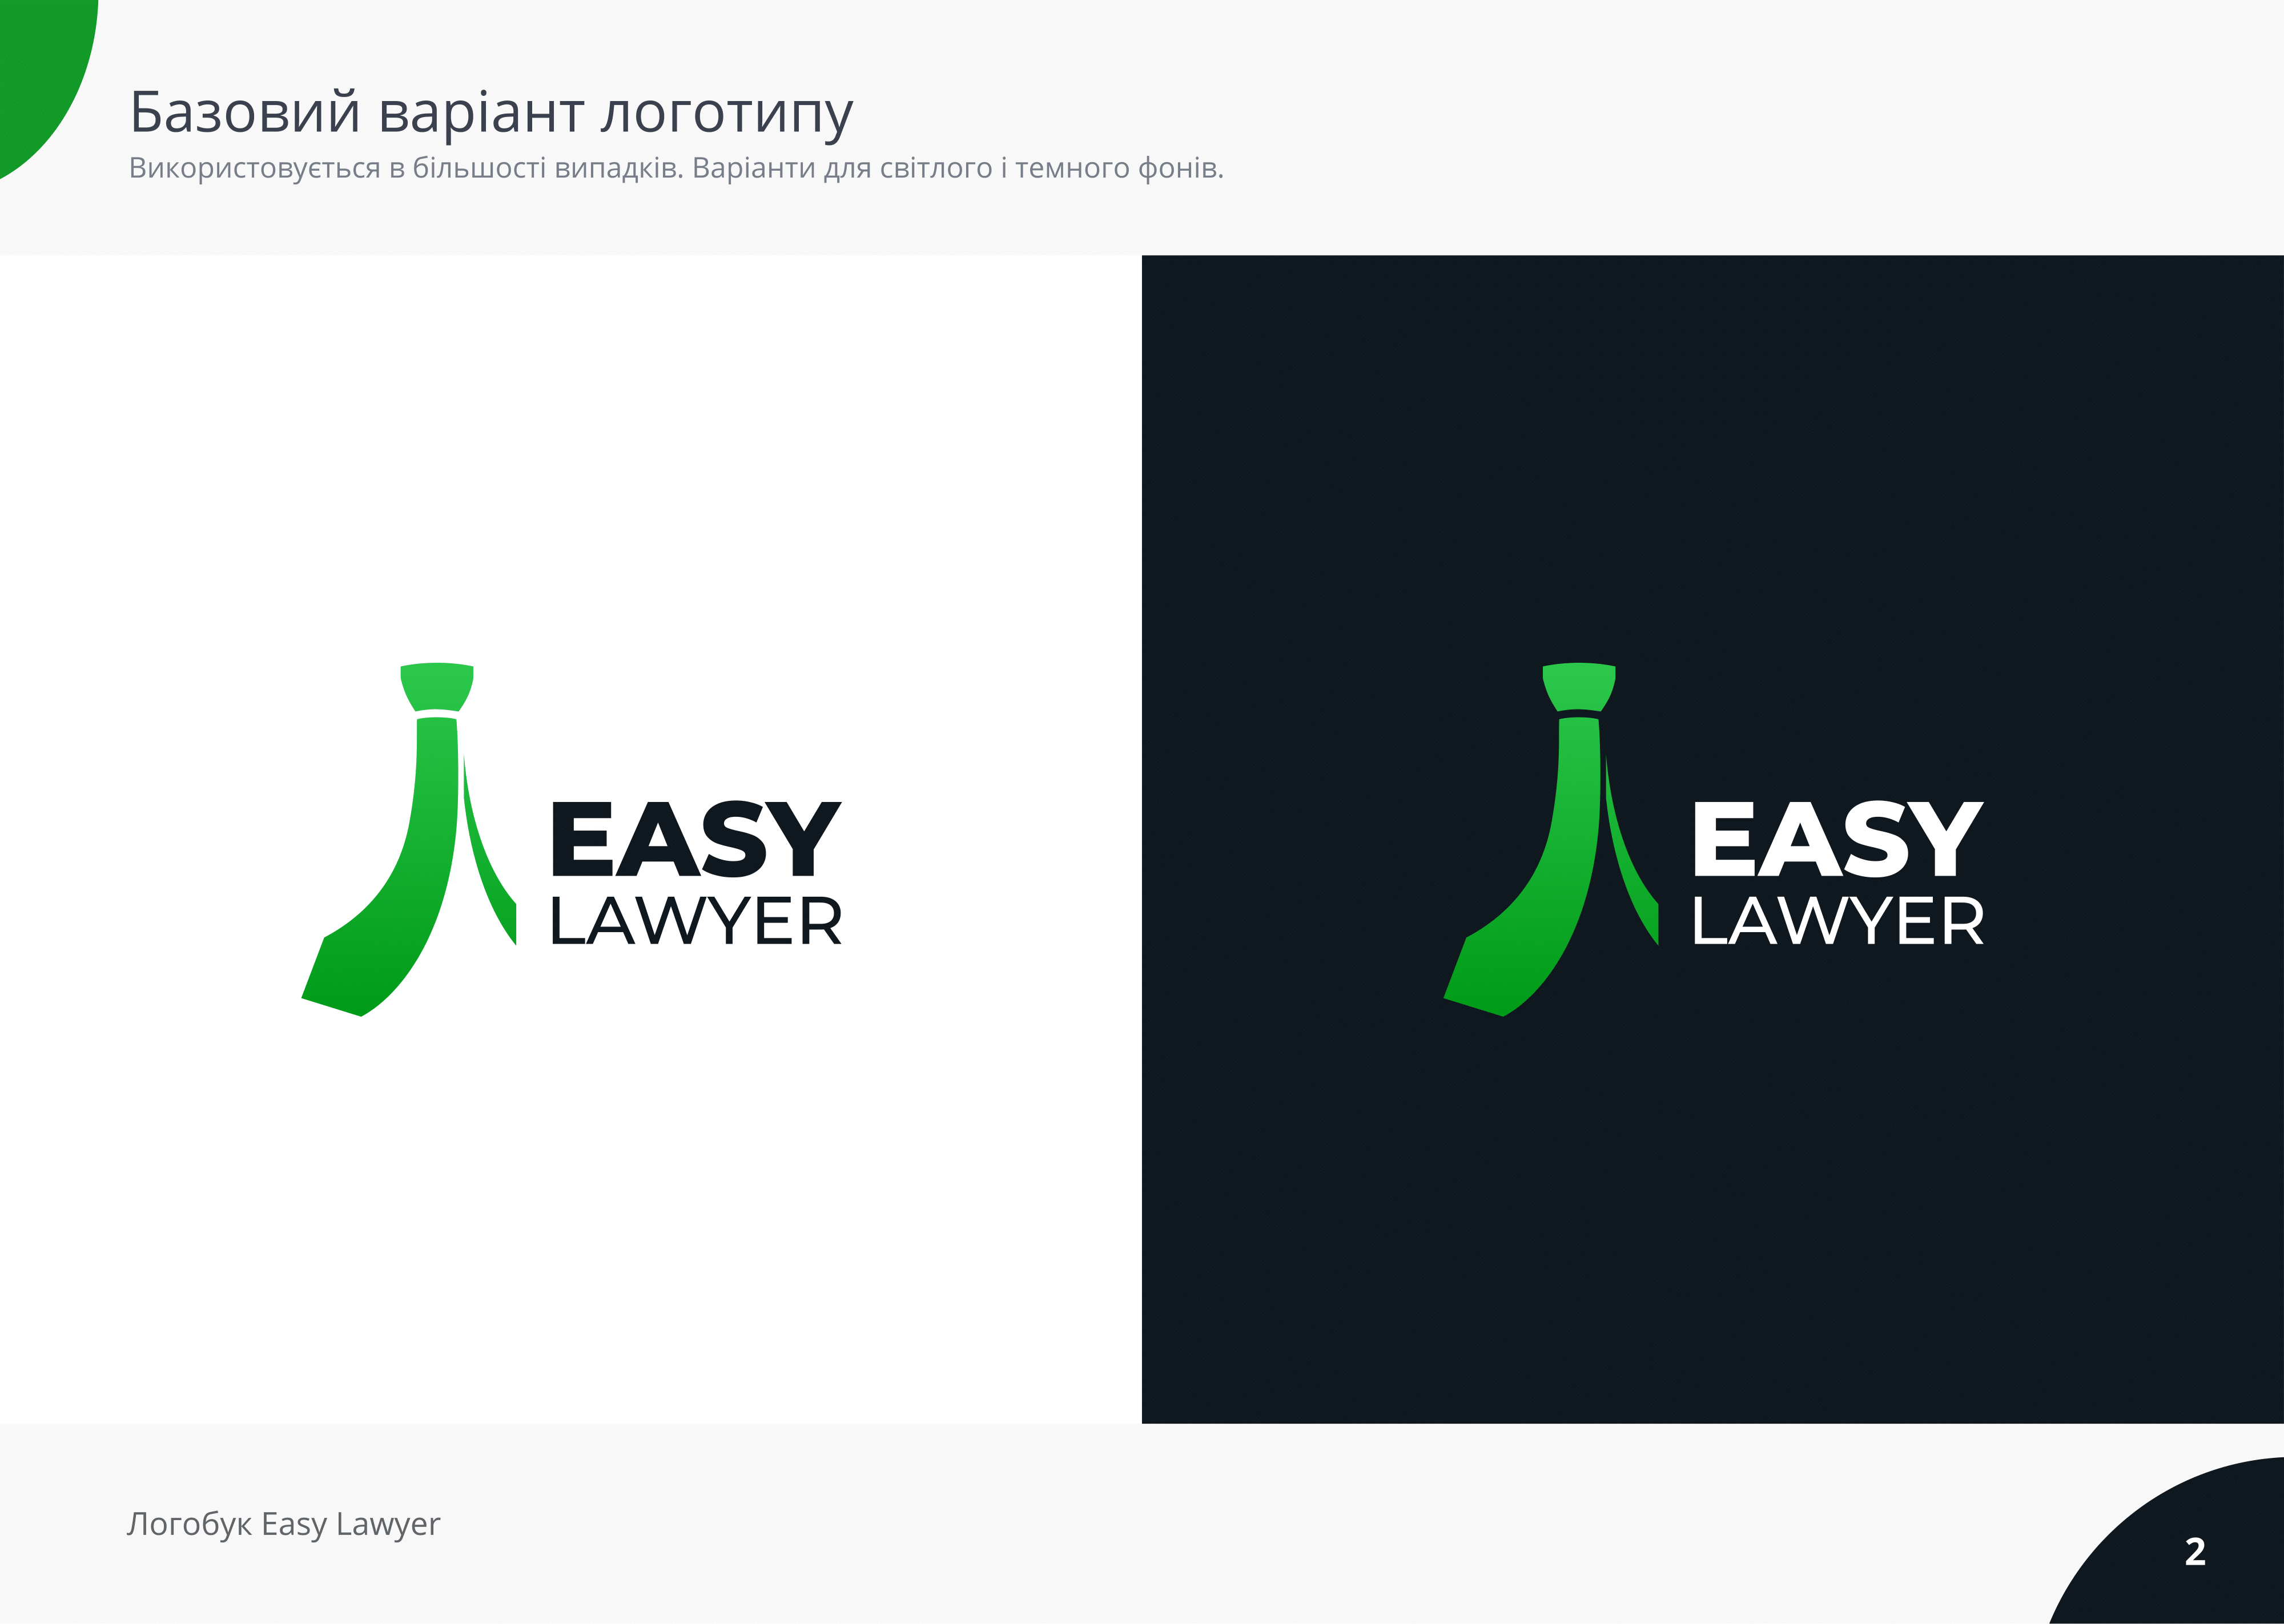 Easy Lawyer (Logobook)-02